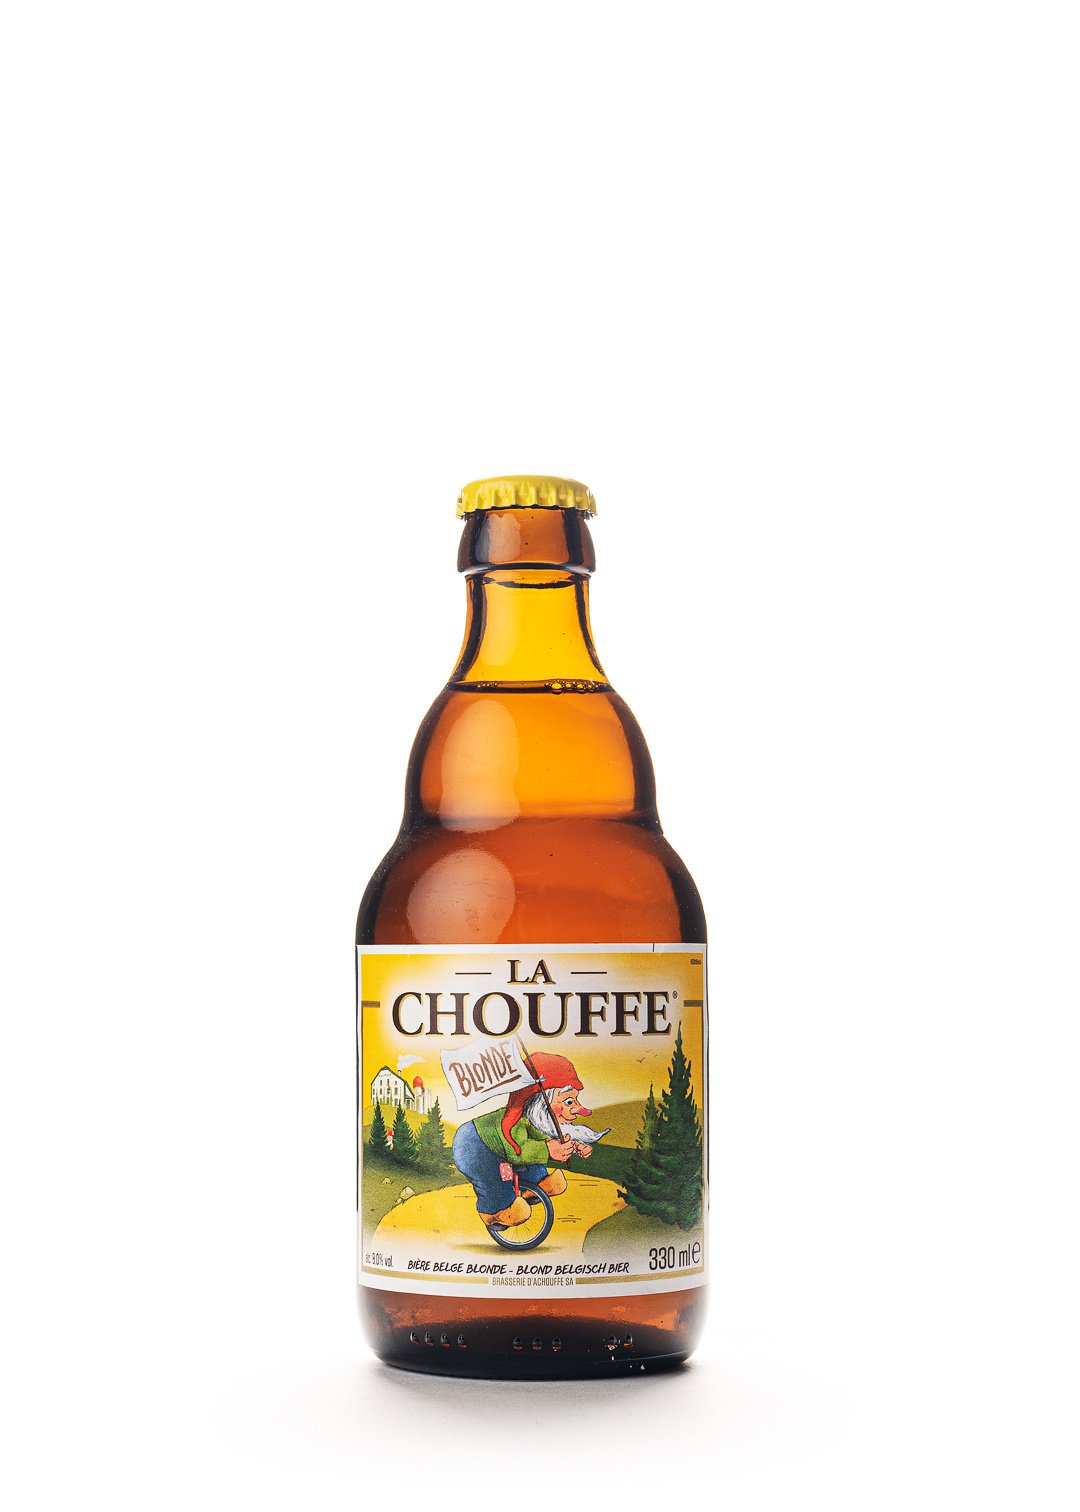 Buy online La Chouffe 33cl - Online beershop - Beer of Belgium